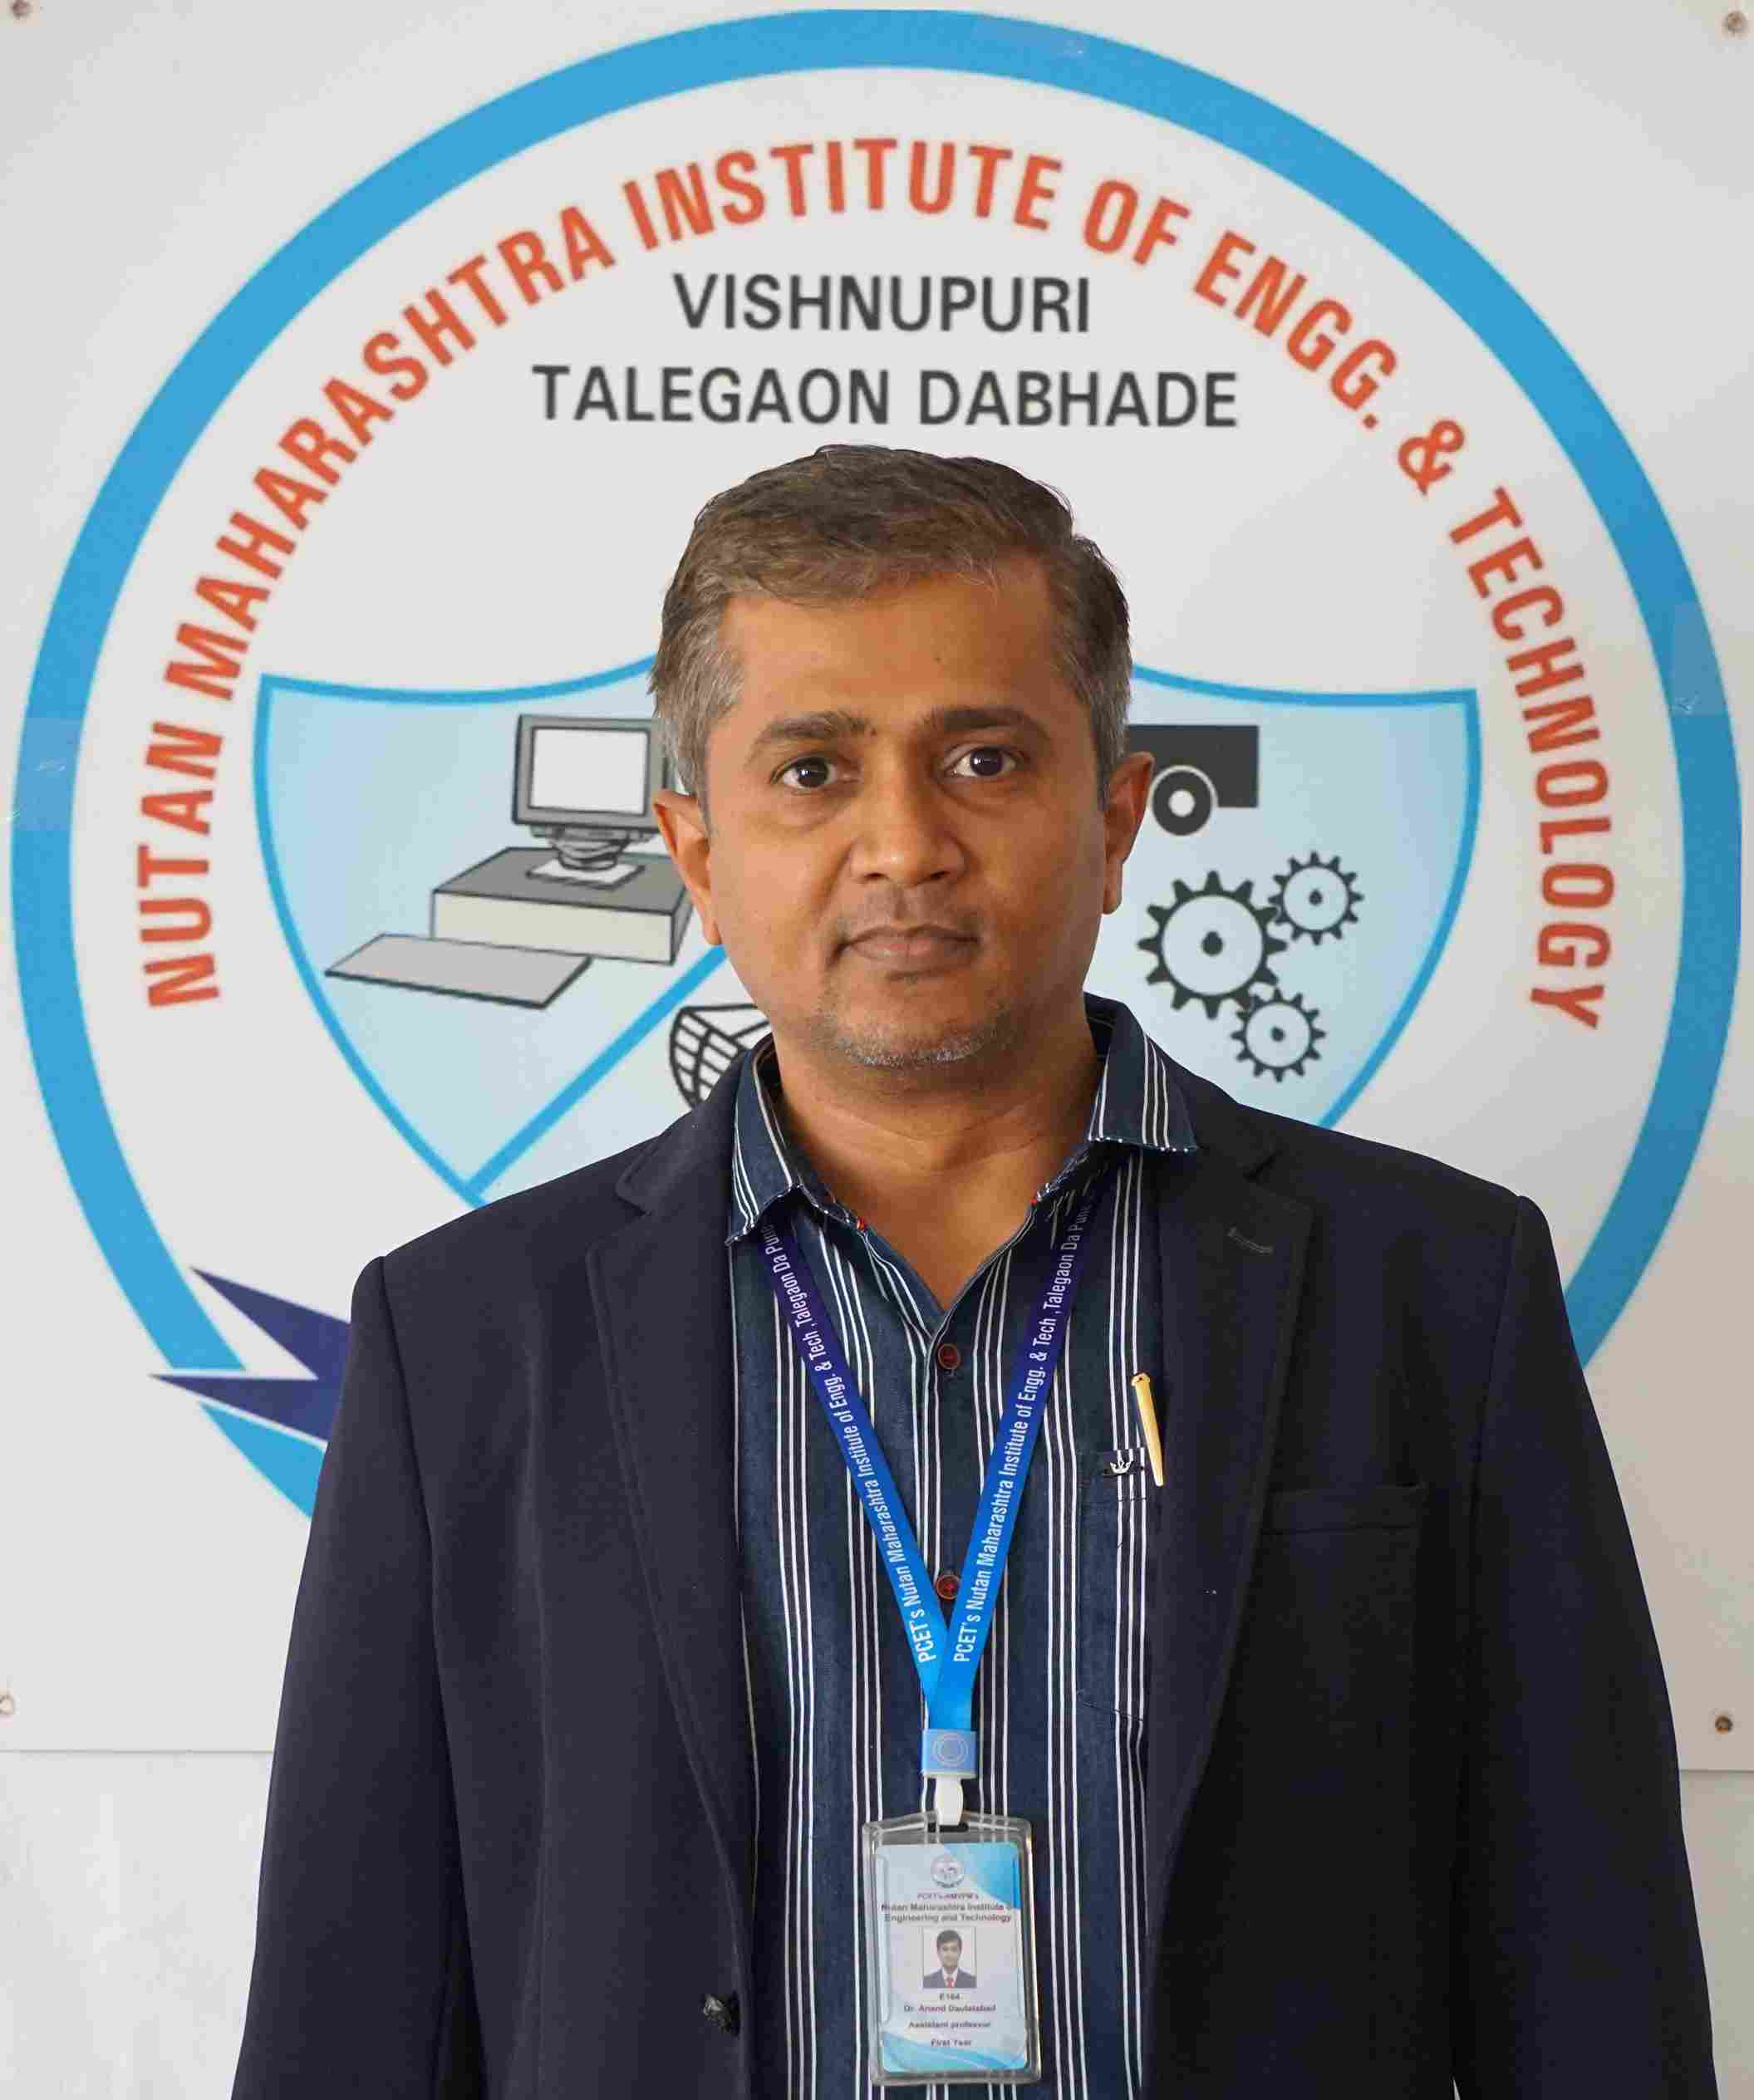 Dr. Anand Daulatabad